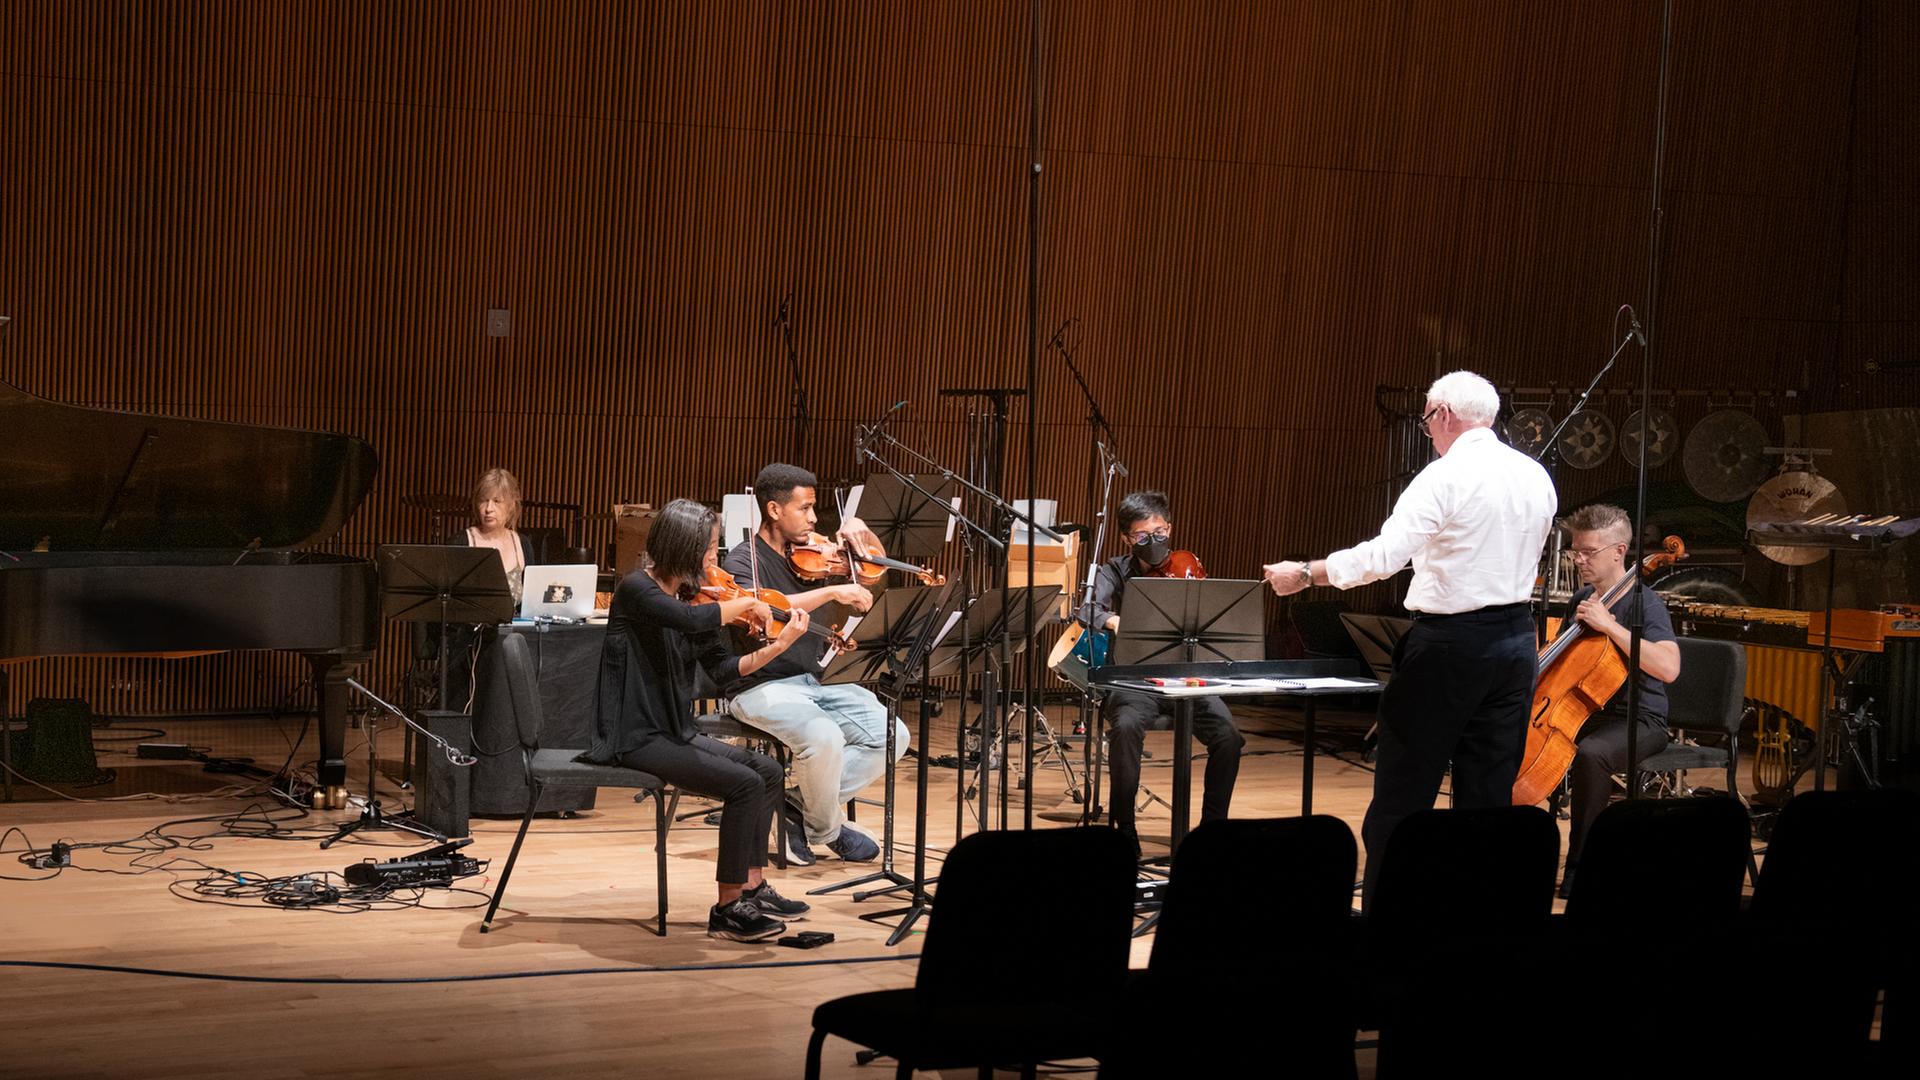 Ein Mann in weißem Hemd dirigiert ein Ensemble von 5 Musikern auf einer Bühne mit braunem Parkettboden